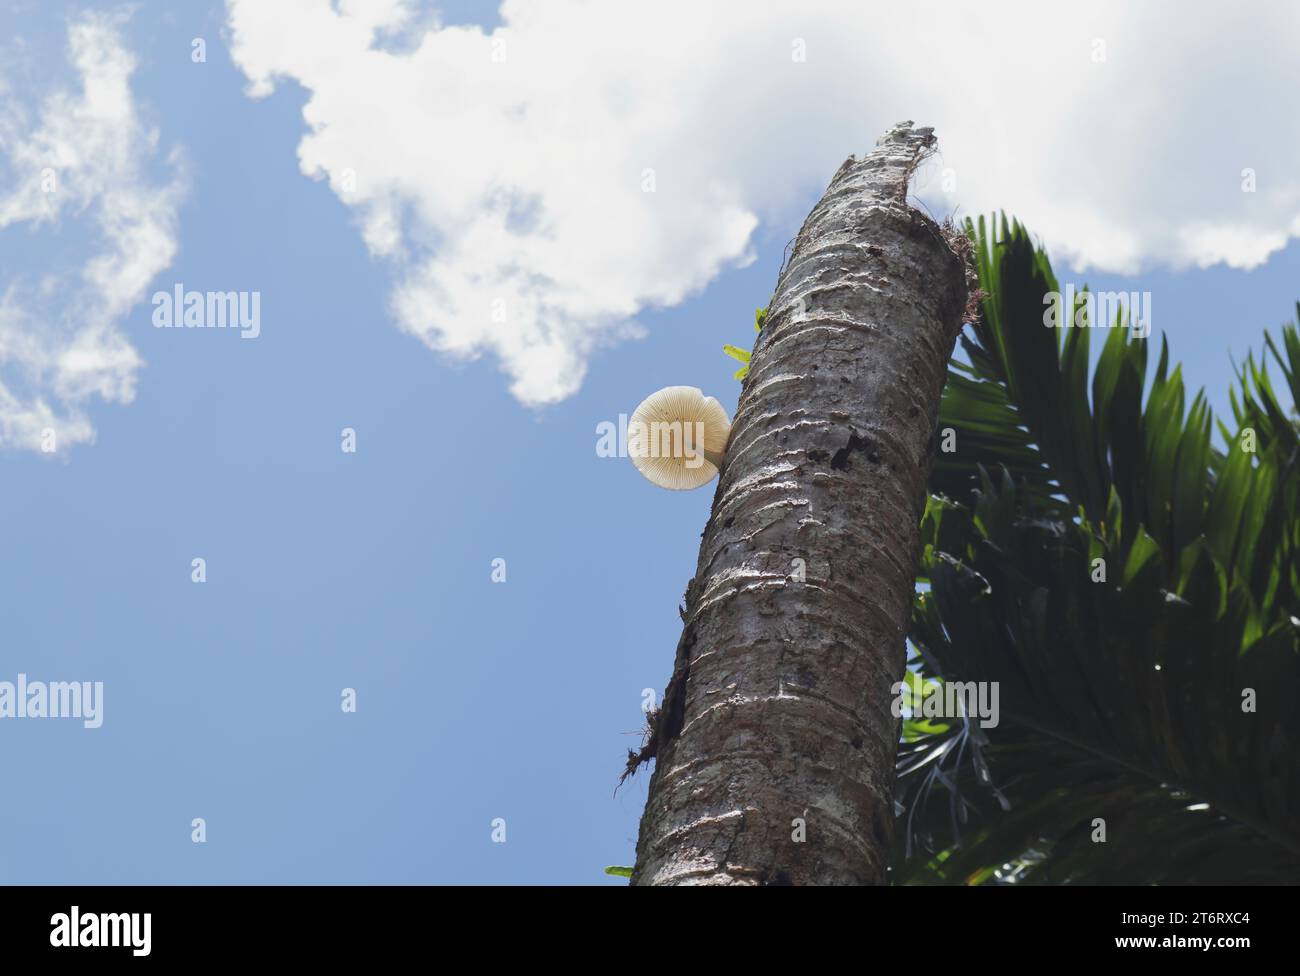 Niedrigwinkelansicht eines erhöhten Restteils eines toten Kokosnussbaums mit weißem Pilz der Gattung Oudemansiella am Stamm unter dem Clou Stockfoto